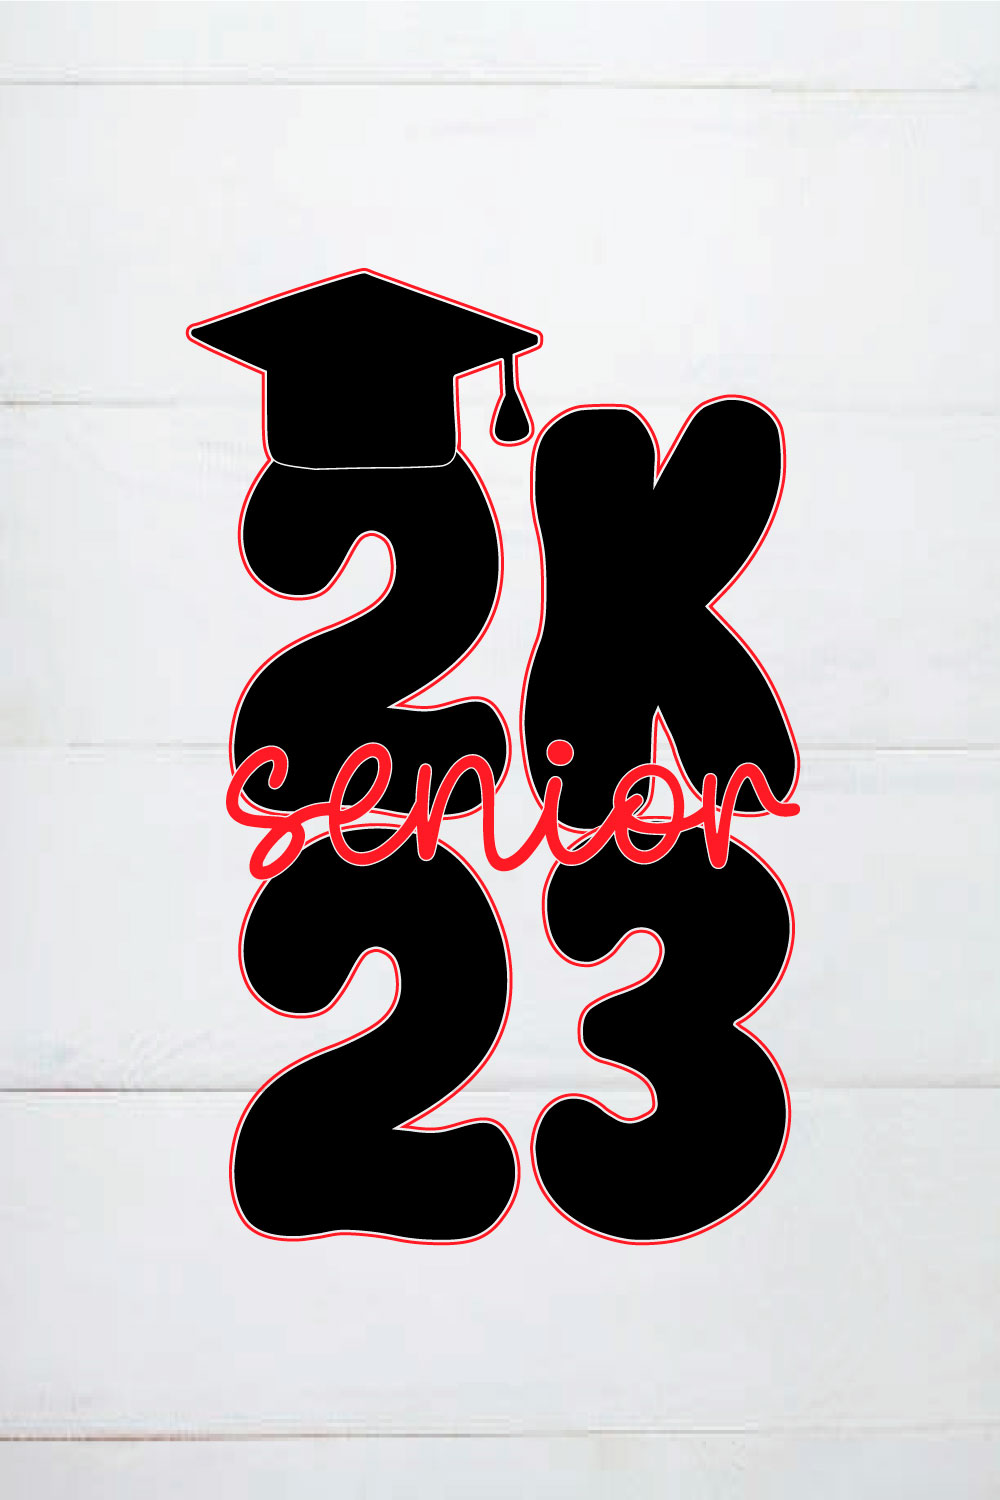 SENIOR 2023 SHIRT,graduation speech,class of 2023 pinterest preview image.